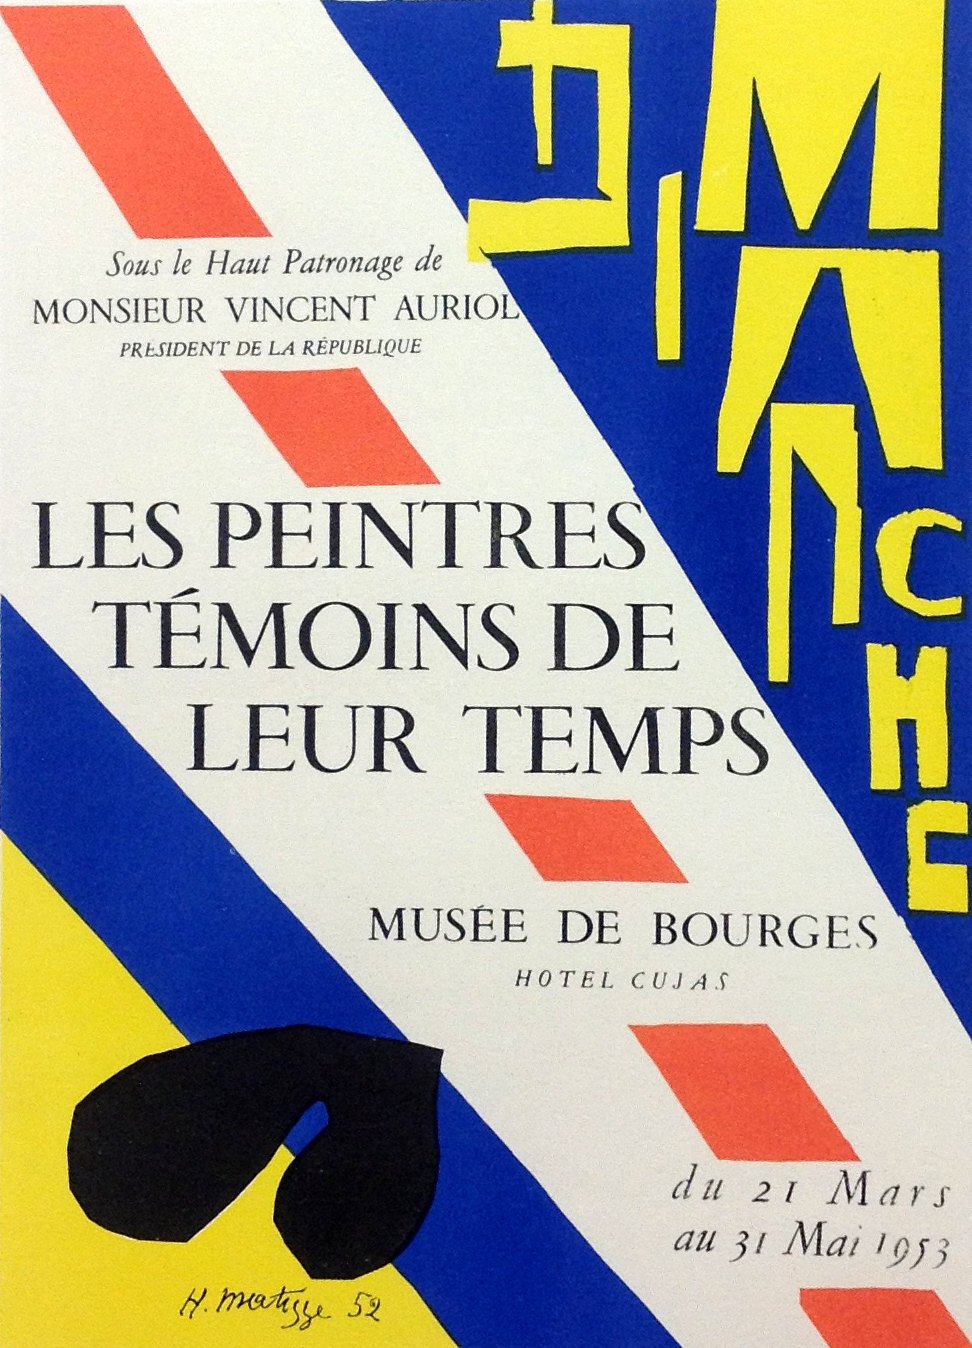 Matisse 44 "Les peintures temoins de leur temps" Art in posters Mourlot 1959